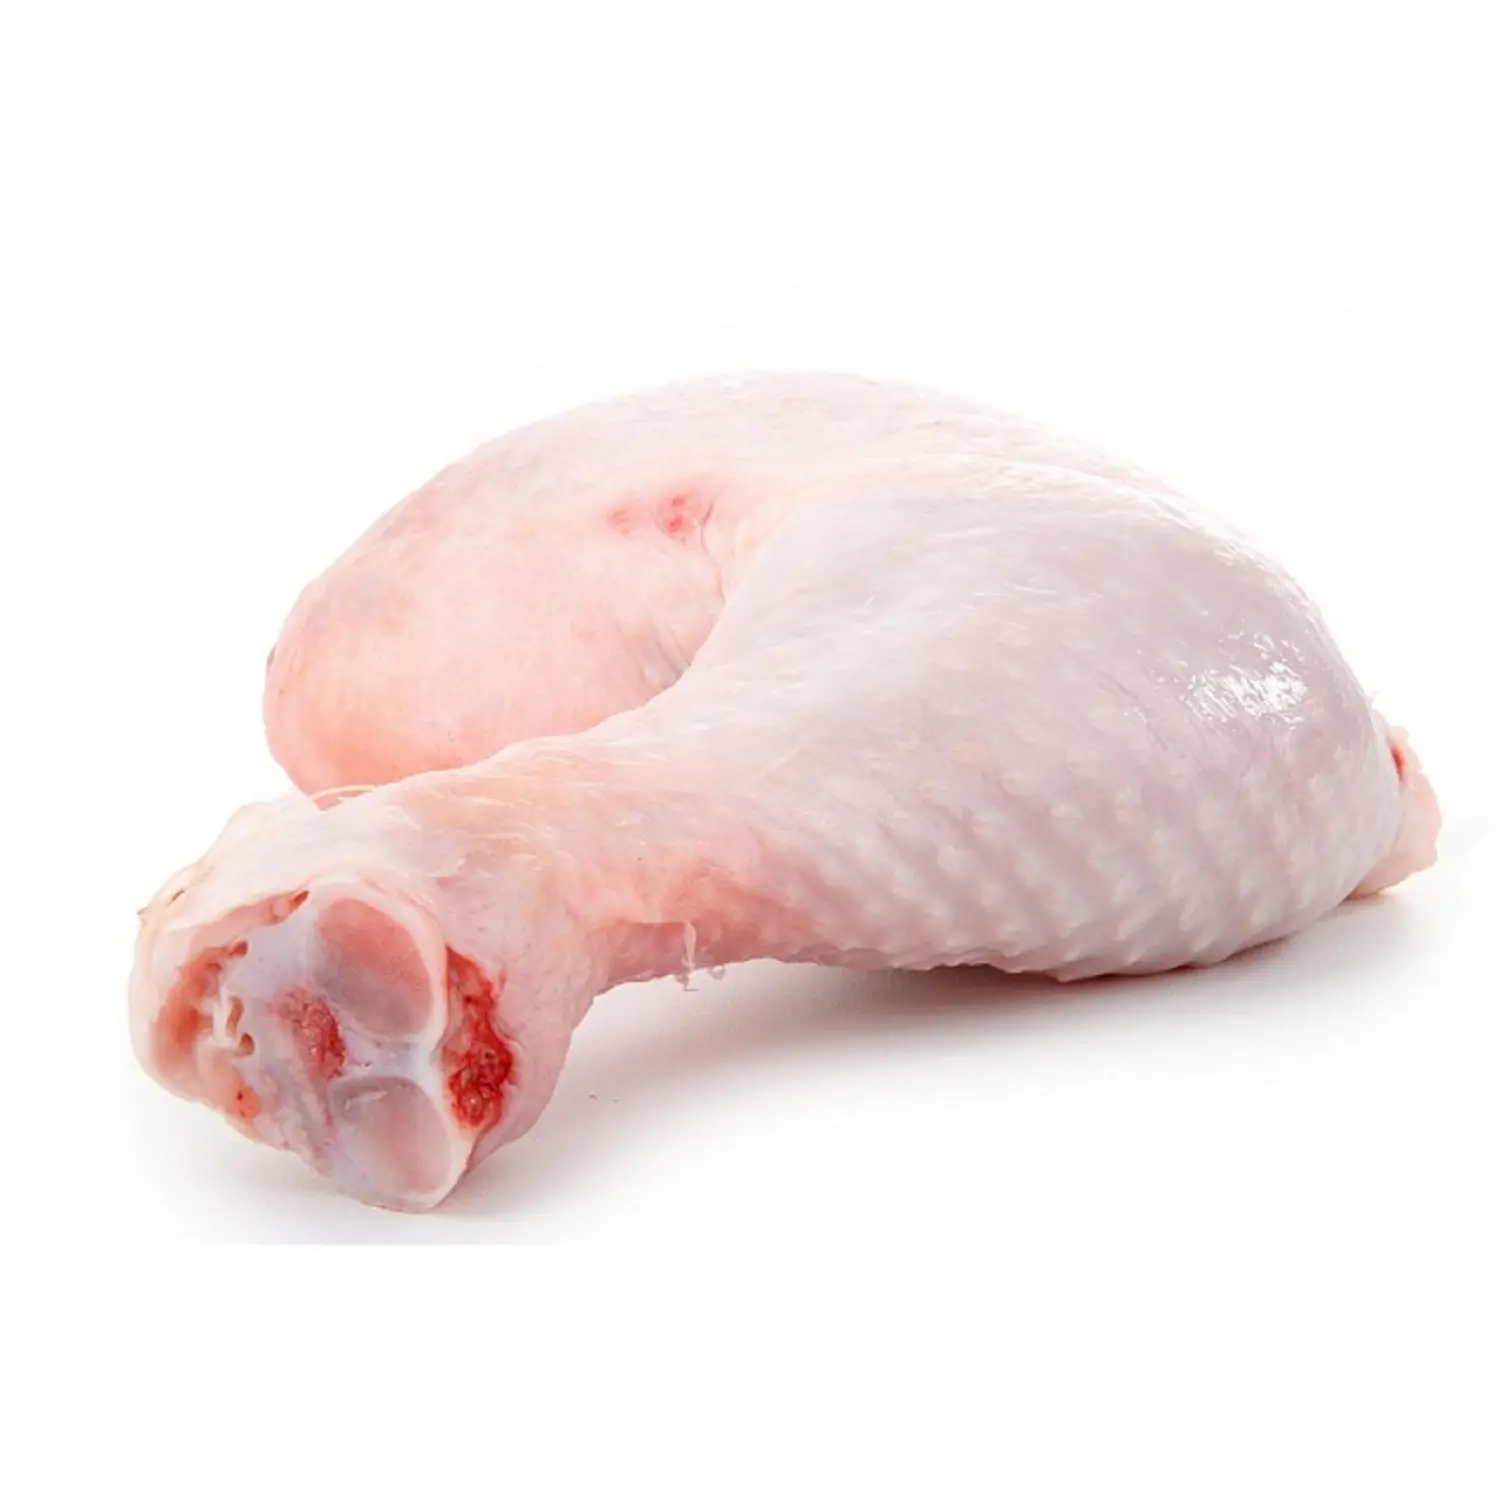 ताजा जमे हुए चिकन पैर/चिकन सहजन/जमे हुए चौथाई चिकन पैर सस्ते कीमत